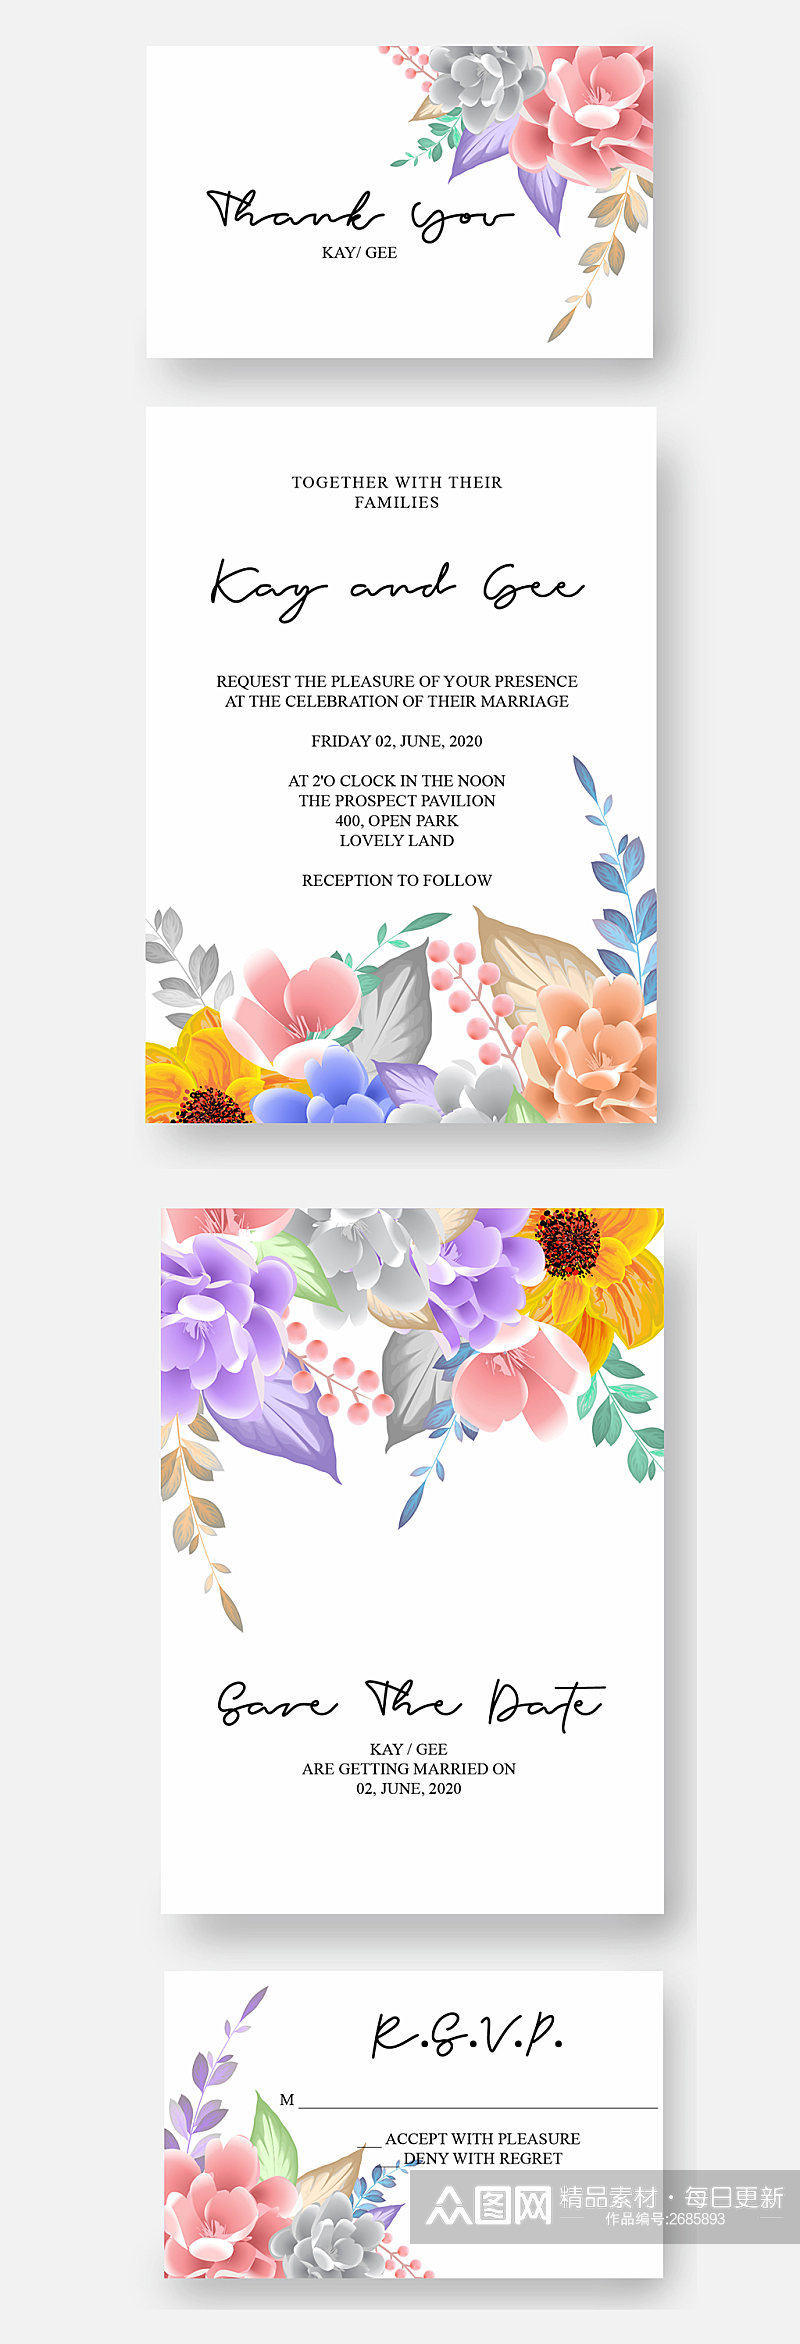 清新淡雅手绘矢量水彩花卉卡片素材